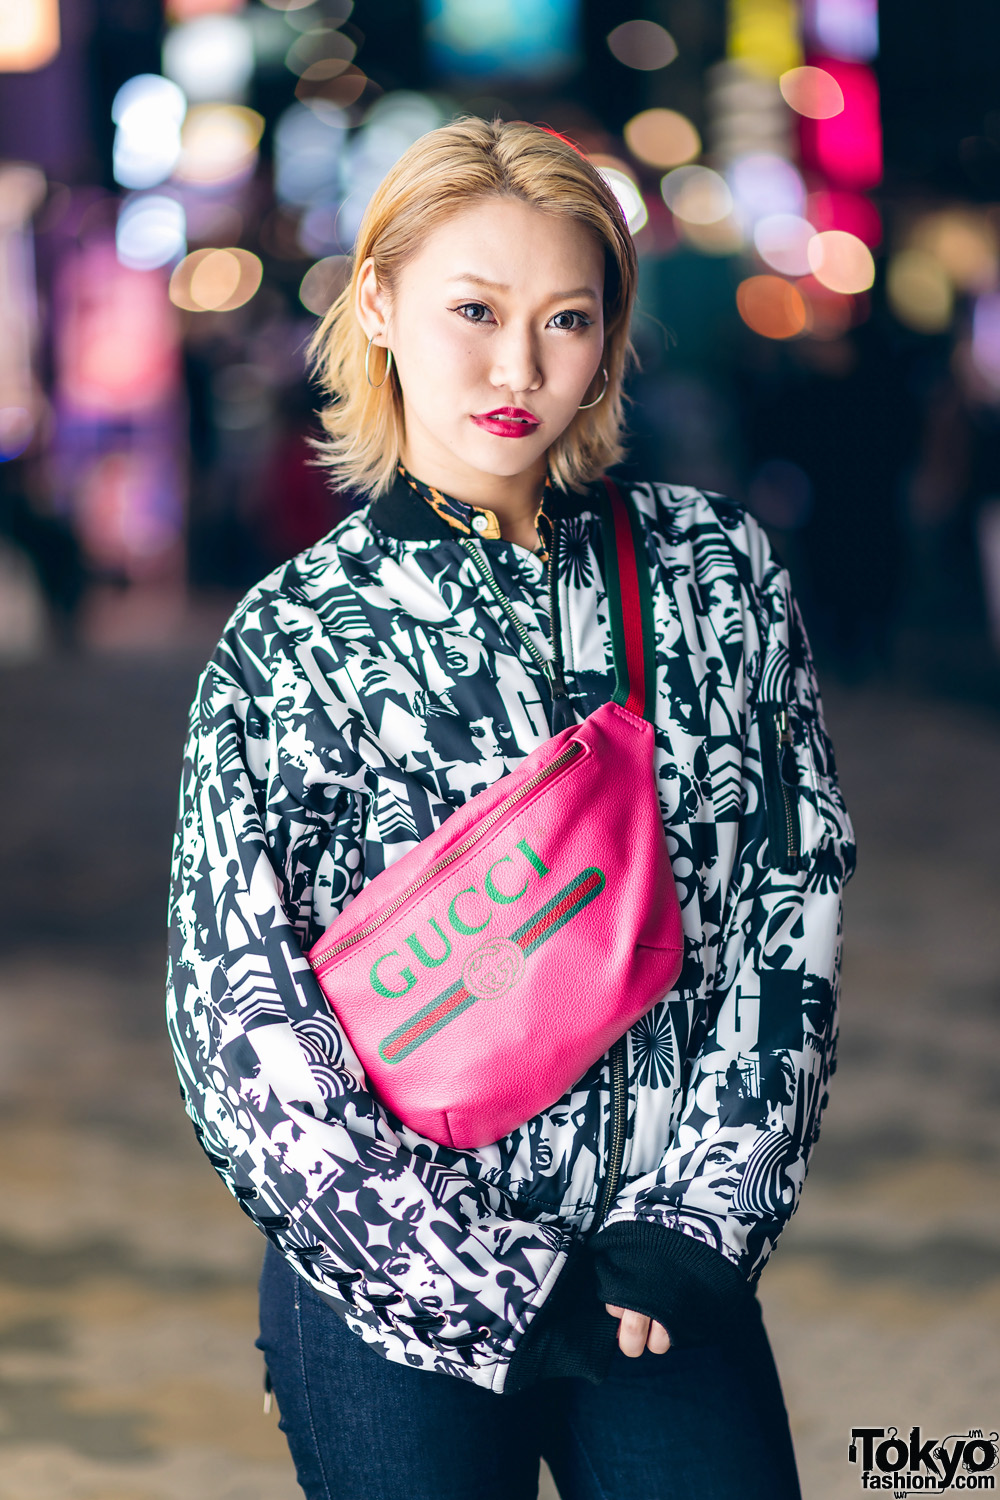 Tokyo Street Fashion w/ Hysteric Glamour, Joyrich, Diesel, Gucci, UNIF ...